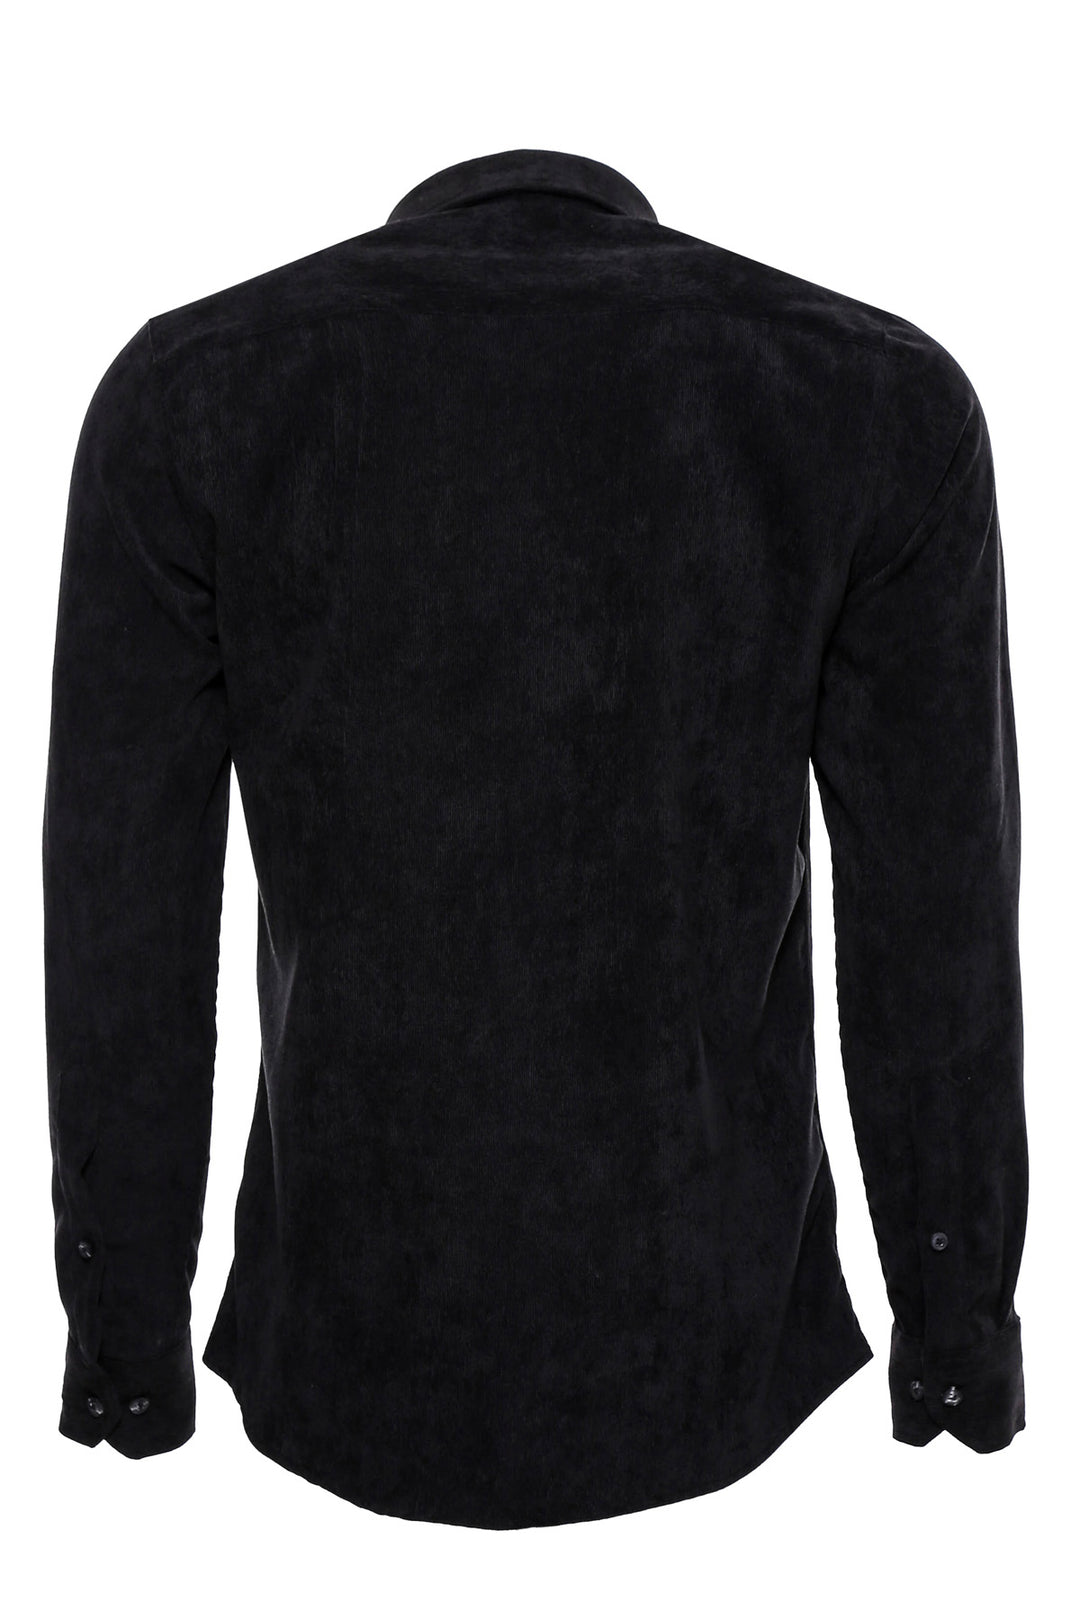 Black Long Sleeves Velvet Men's Shirt - Wessi